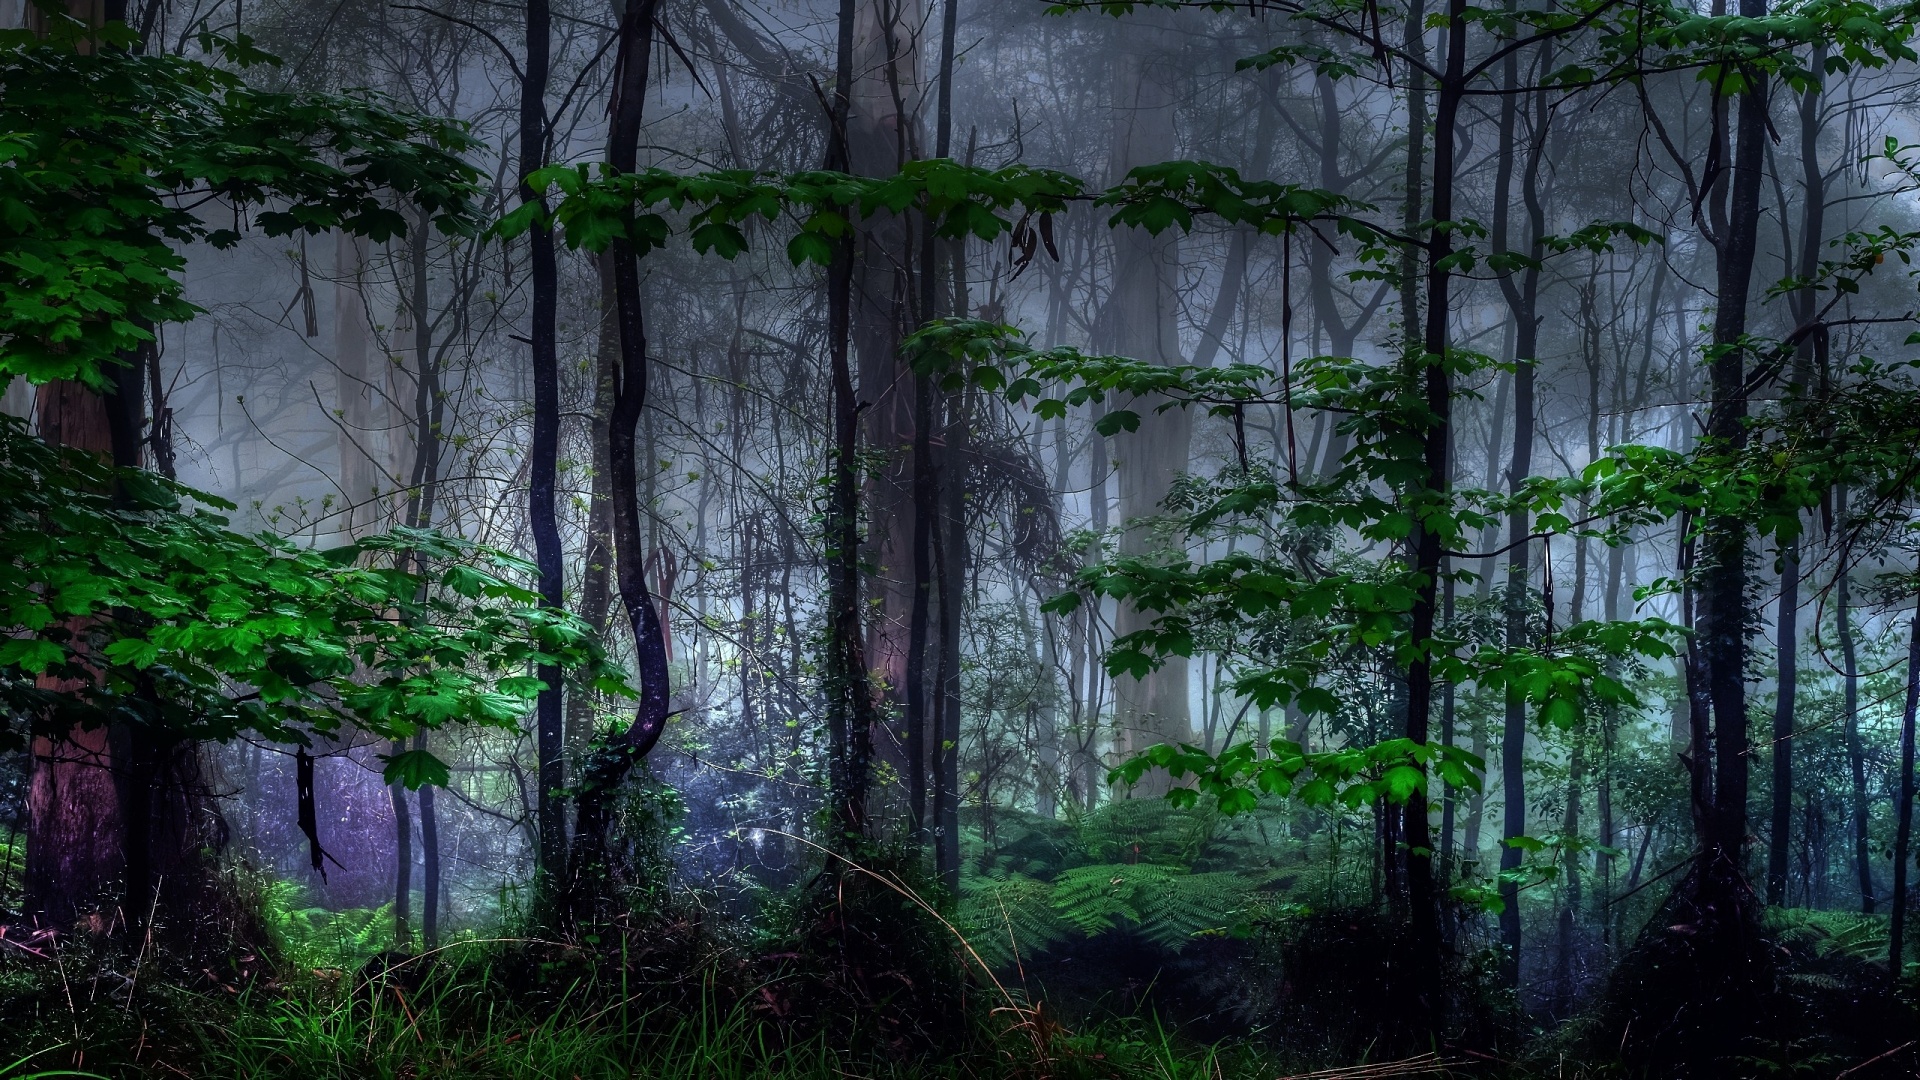 https://blogger.googleusercontent.com/img/b/R29vZ2xl/AVvXsEjhyu0Ko4Twr7bKwK5KIdrFNNktZDHn82gDfLOj0XR8kgk3cFVFLs5kyfEIFpgSCPOoMg51dJjygDJGxfARyijkthlpZ4Wkgm_8lqt9I9LAj1XrkytP9kYldqlfcRXE6x_xaXoYVsaC-Wq8/s0/nature-trees-dark-forest-mist-1920x1080.jpg